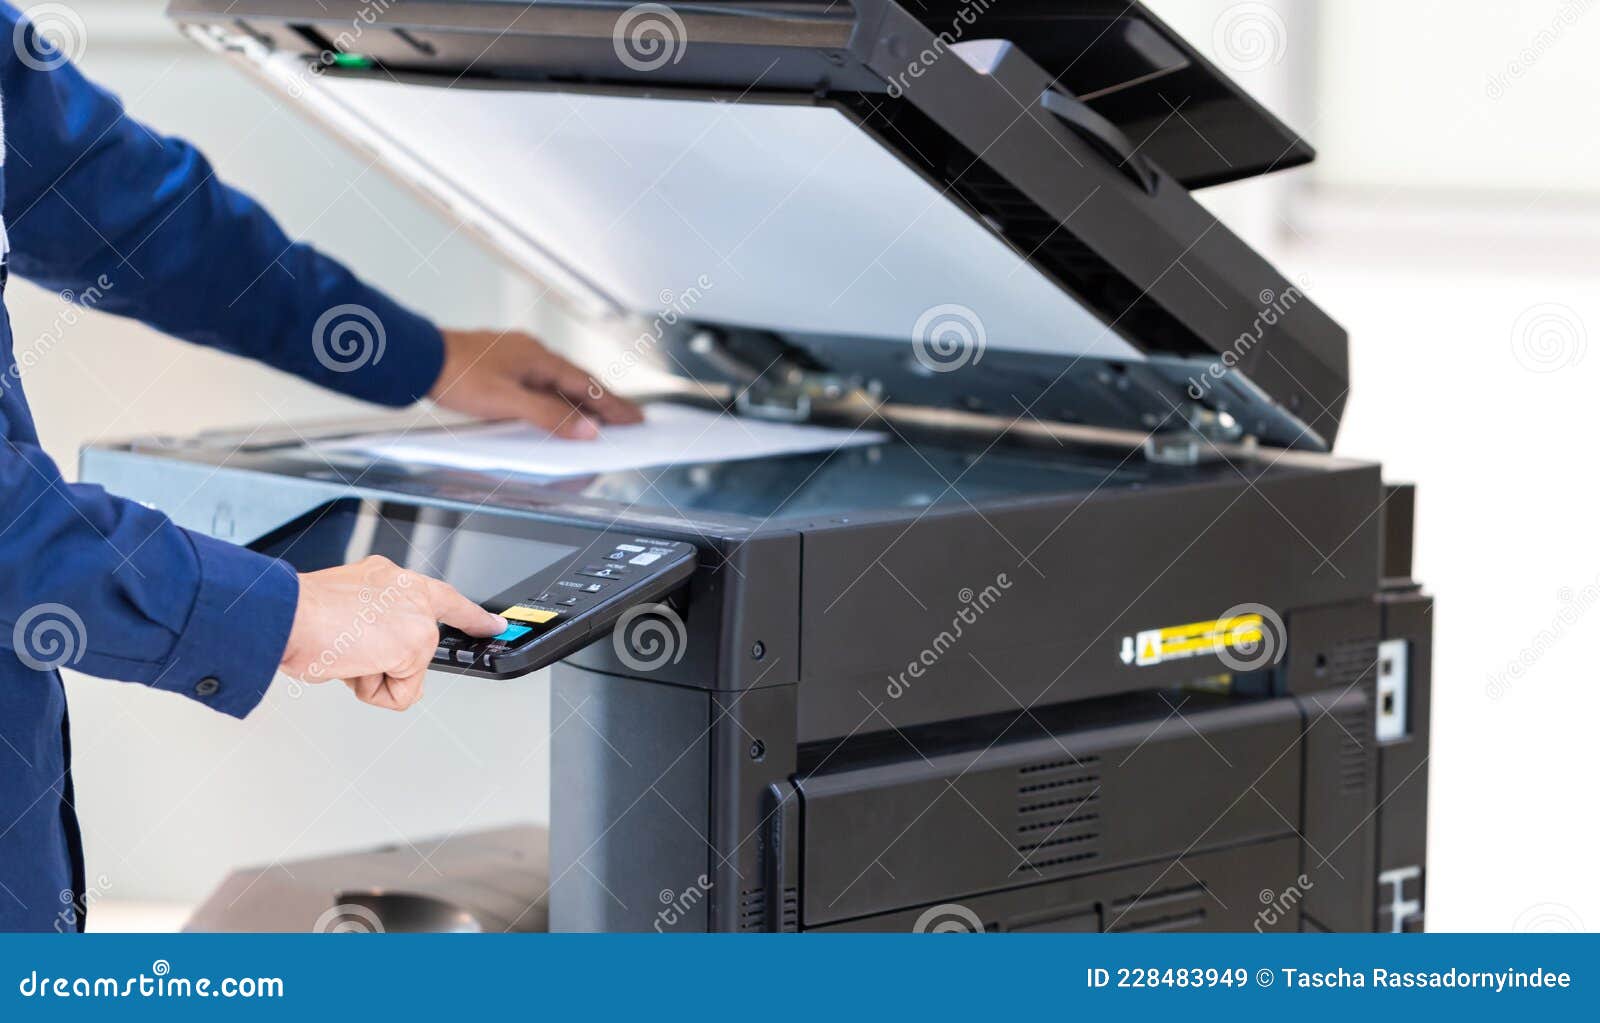 een zakelijke persknop op het paneel van fotokopieerapparaat dat werkt fotokopie%C3%ABn kantoorontwerp de zakenman printer aan 228483949